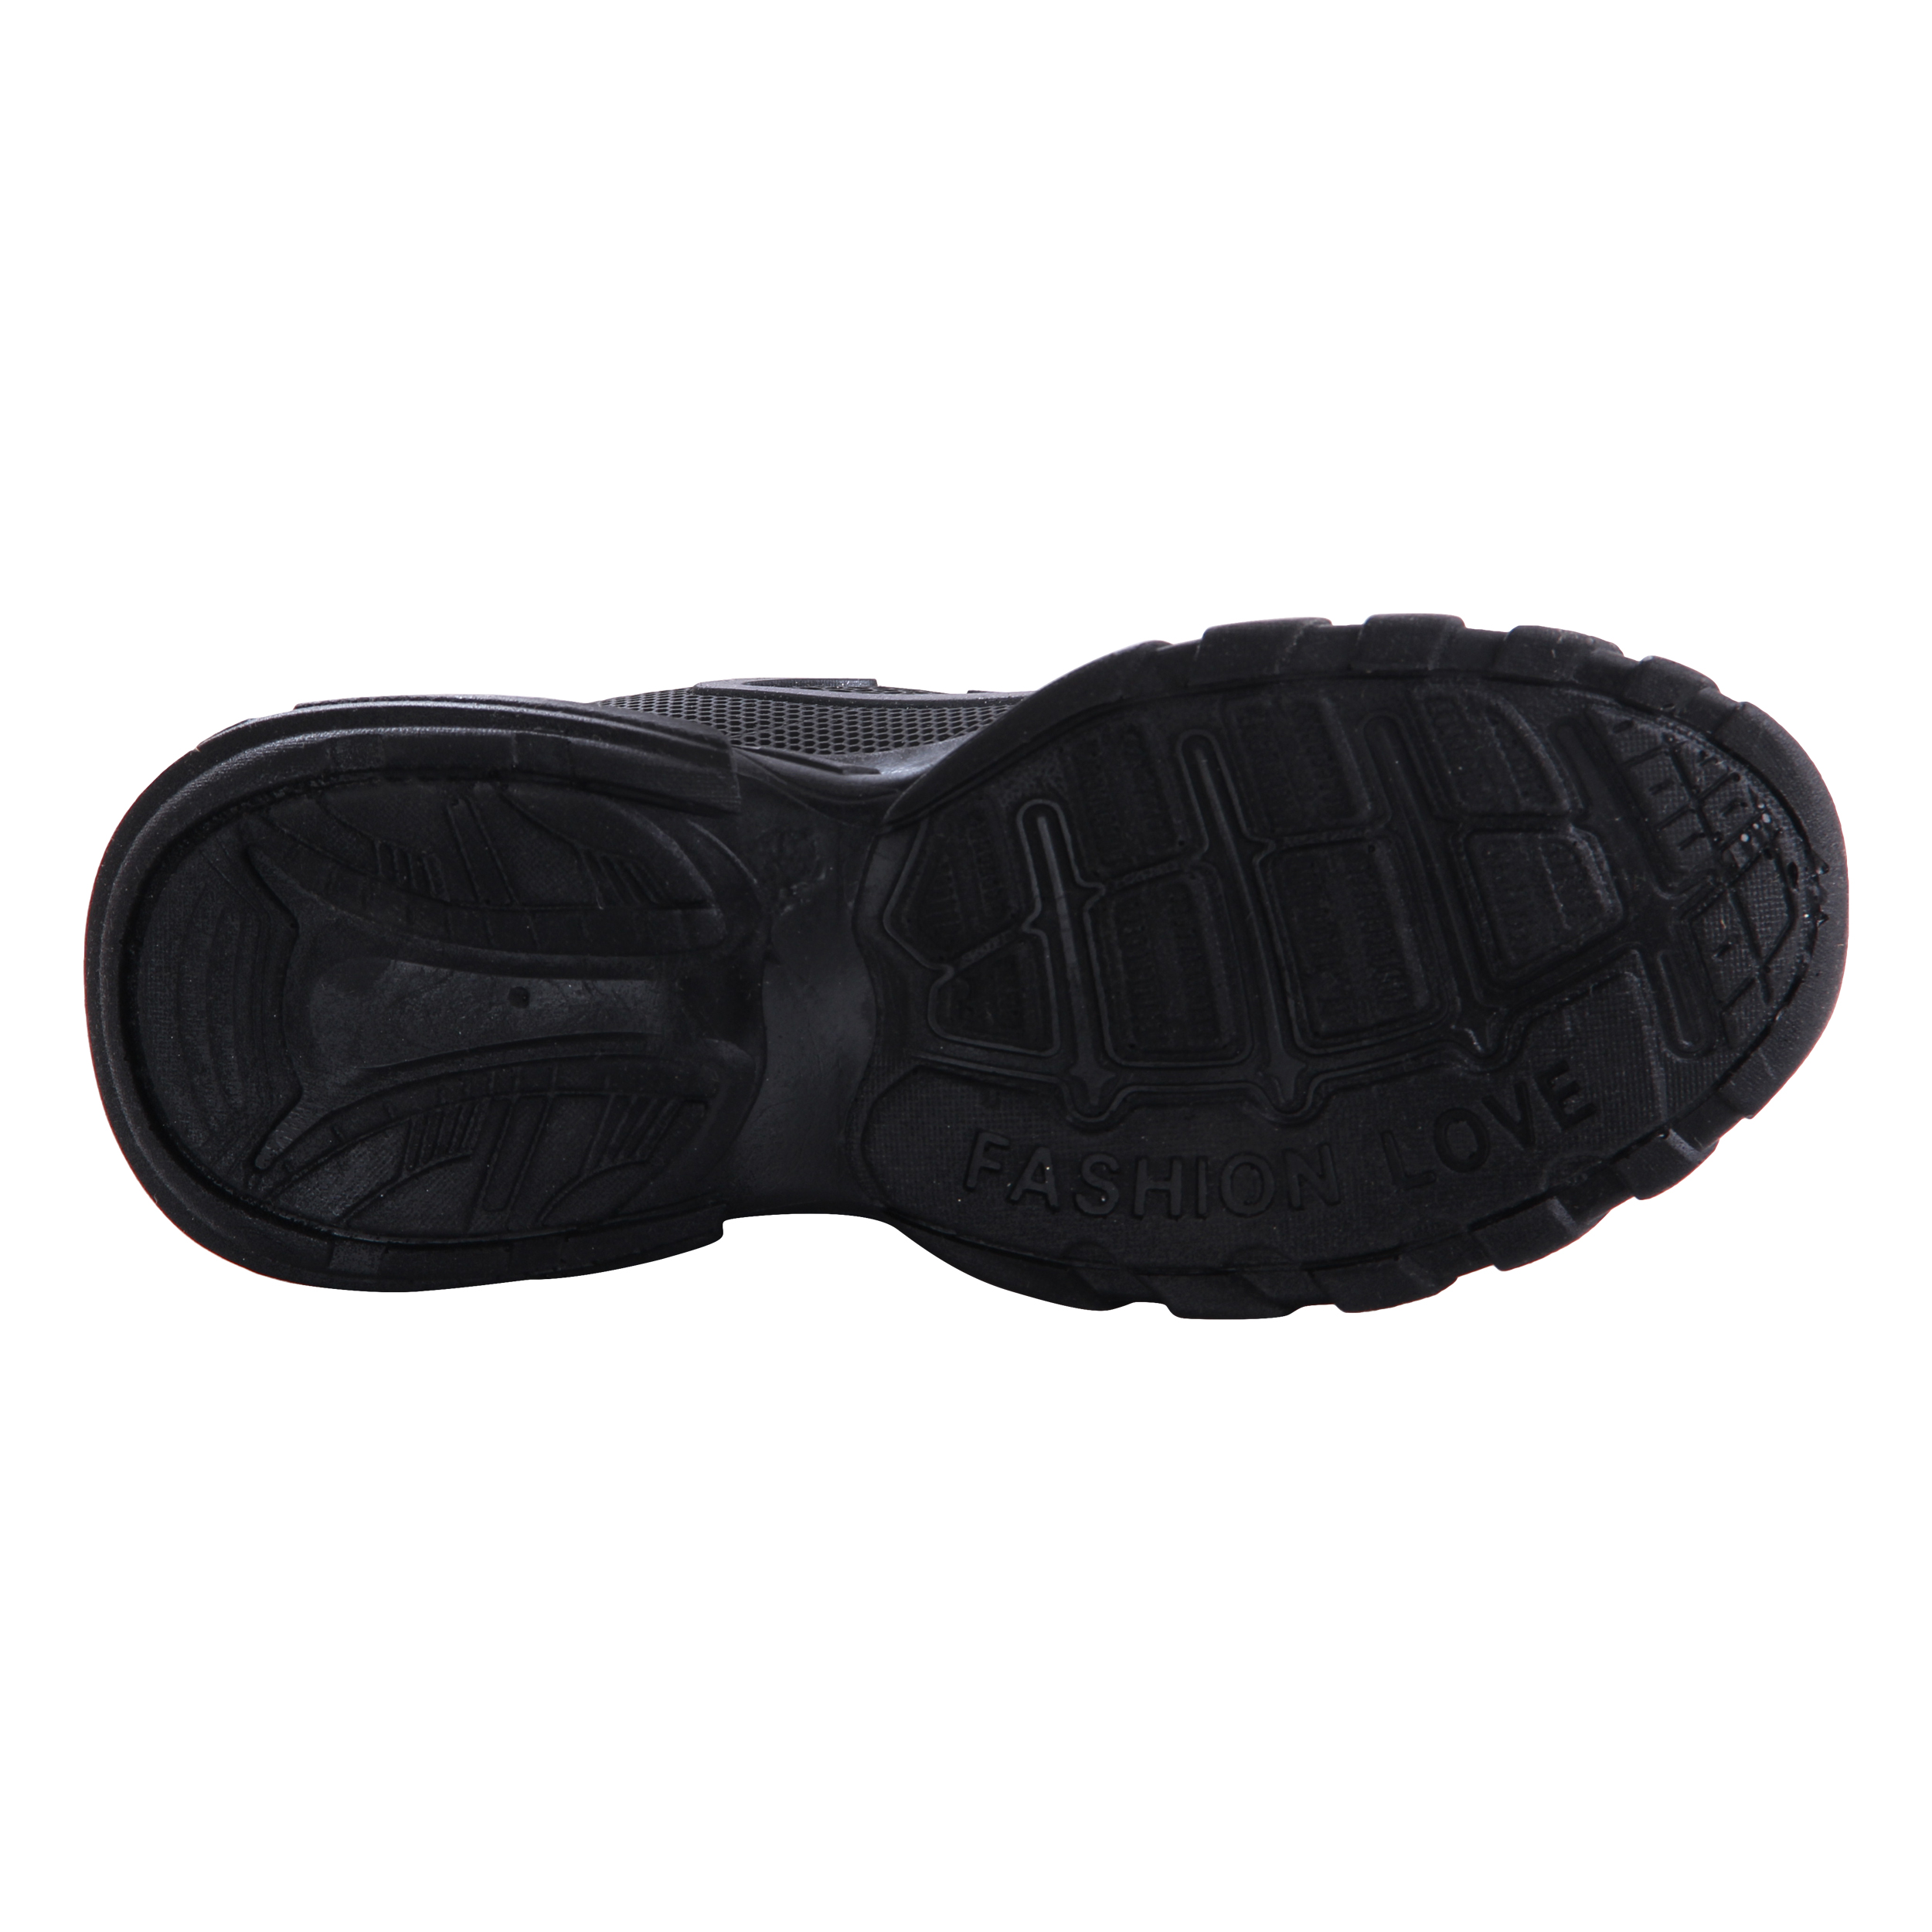  کفش مخصوص پیاده روی زنانه کد 1-39990